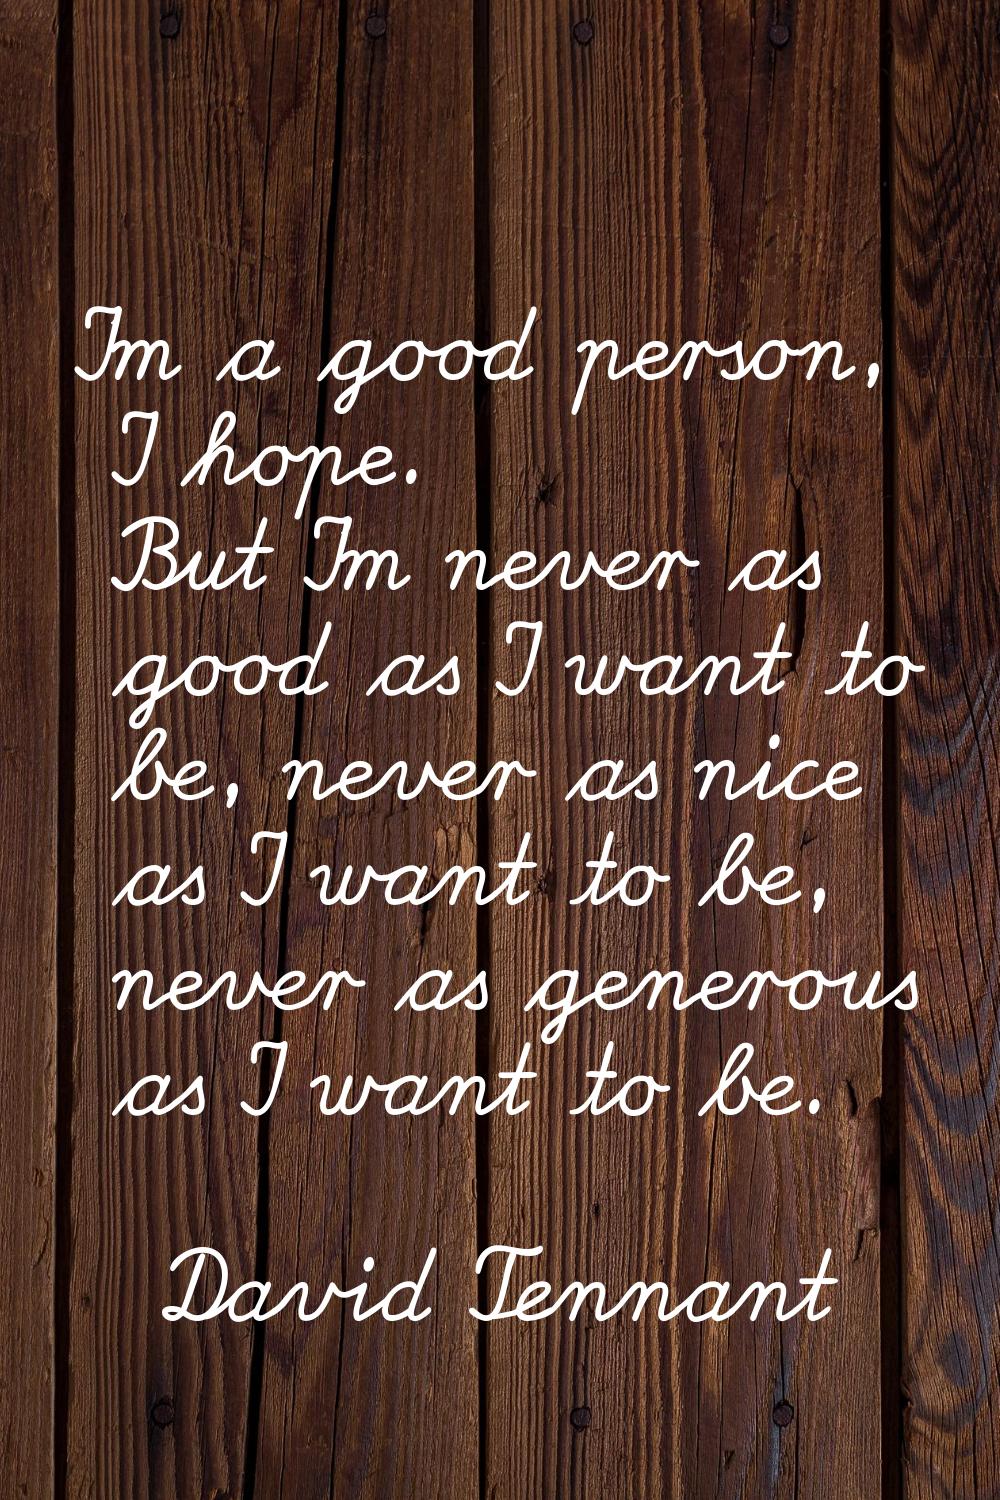 I'm a good person, I hope. But I'm never as good as I want to be, never as nice as I want to be, ne